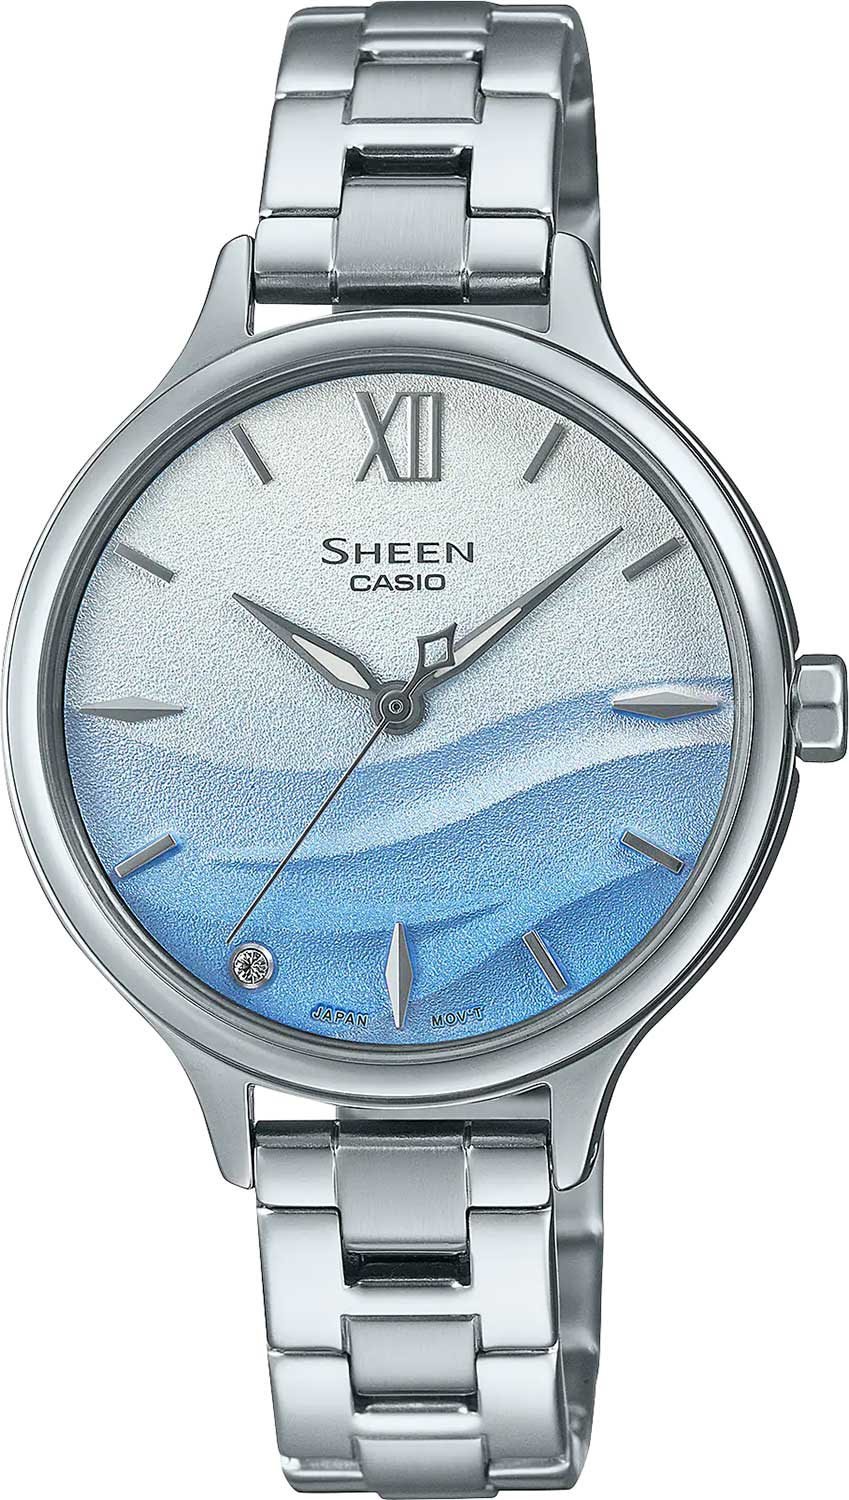    Casio Sheen SHE-4550D-2A